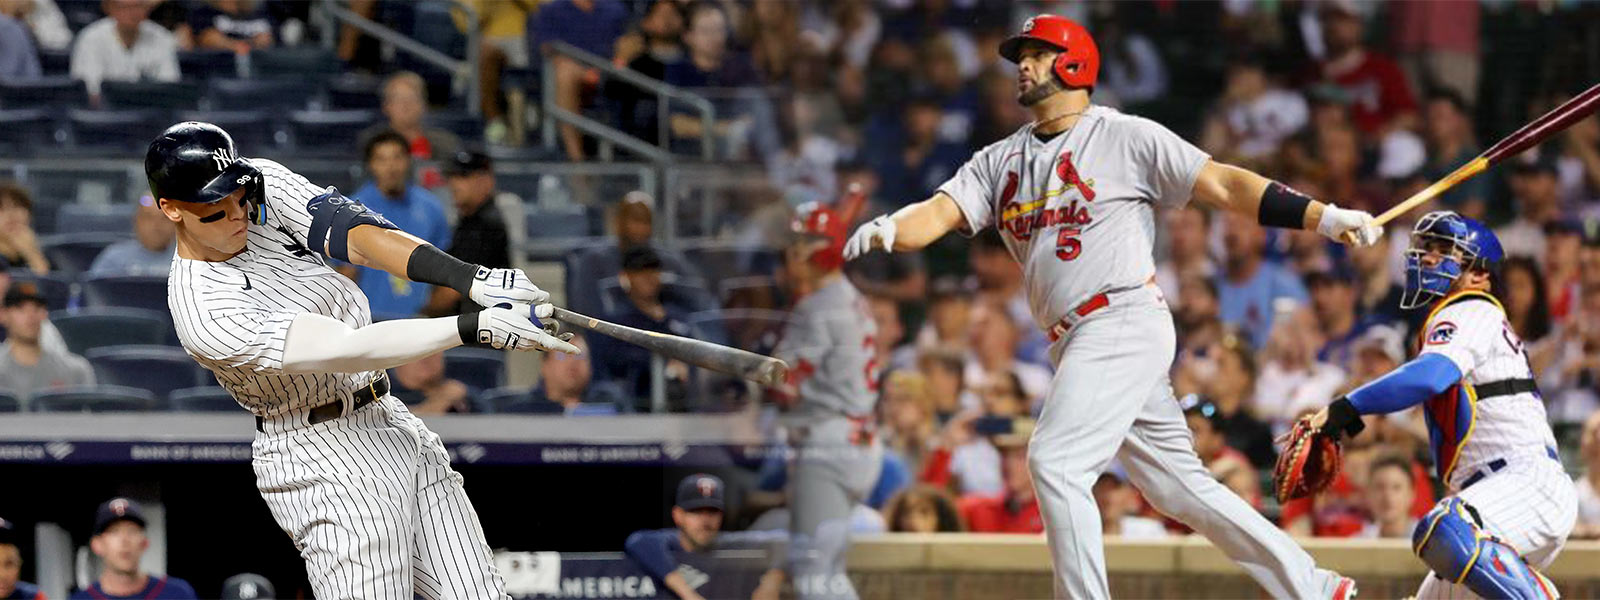 St. Louis Cardinals slugger Albert Pujols 'chases' baseball